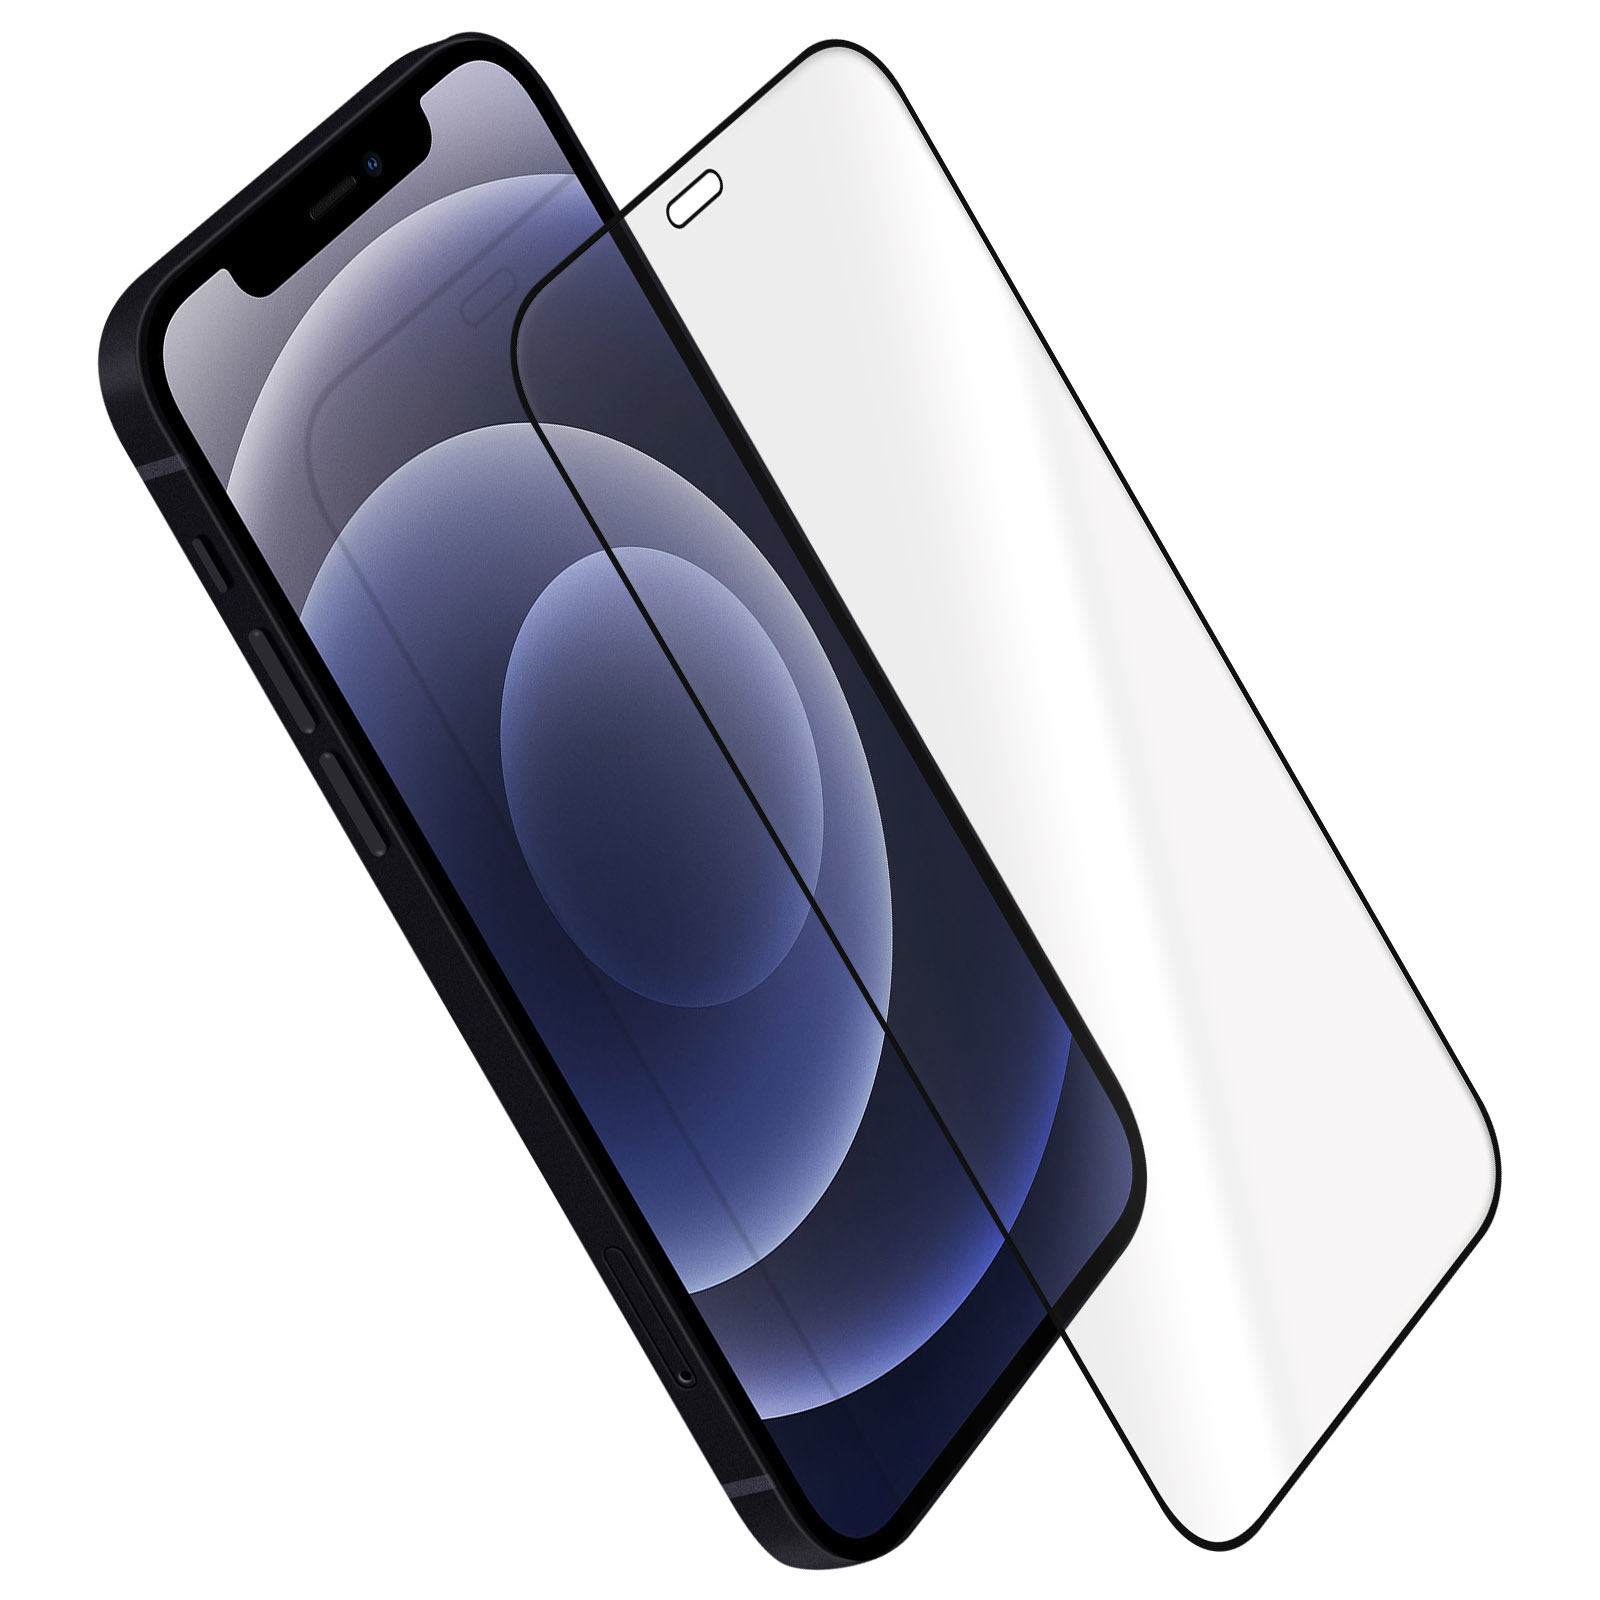 Verre Trempé iPhone 12 / 12 Pro Protection Intégrale Ecran,  Ultra-résistant, Blueo - Noir - Français